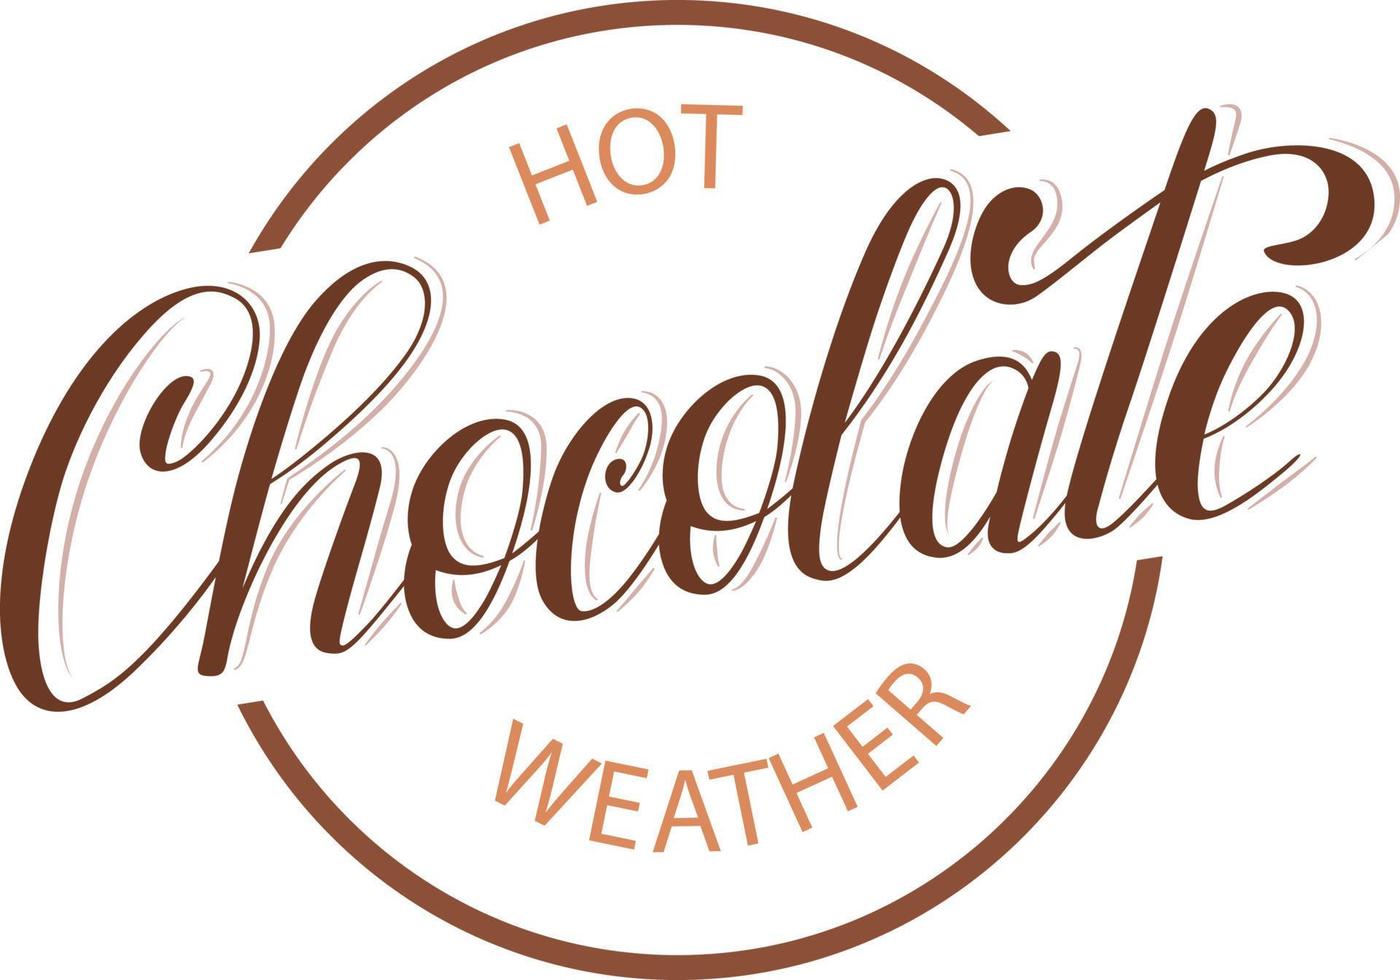 Vektor handgeschriebener Pinsel Schriftzug heiße Schokolade Wetter. Phrase für Winter- und Herbstzeit. braune Farbe der Buchstaben. Design für T-Shirts, Tassen, Poster